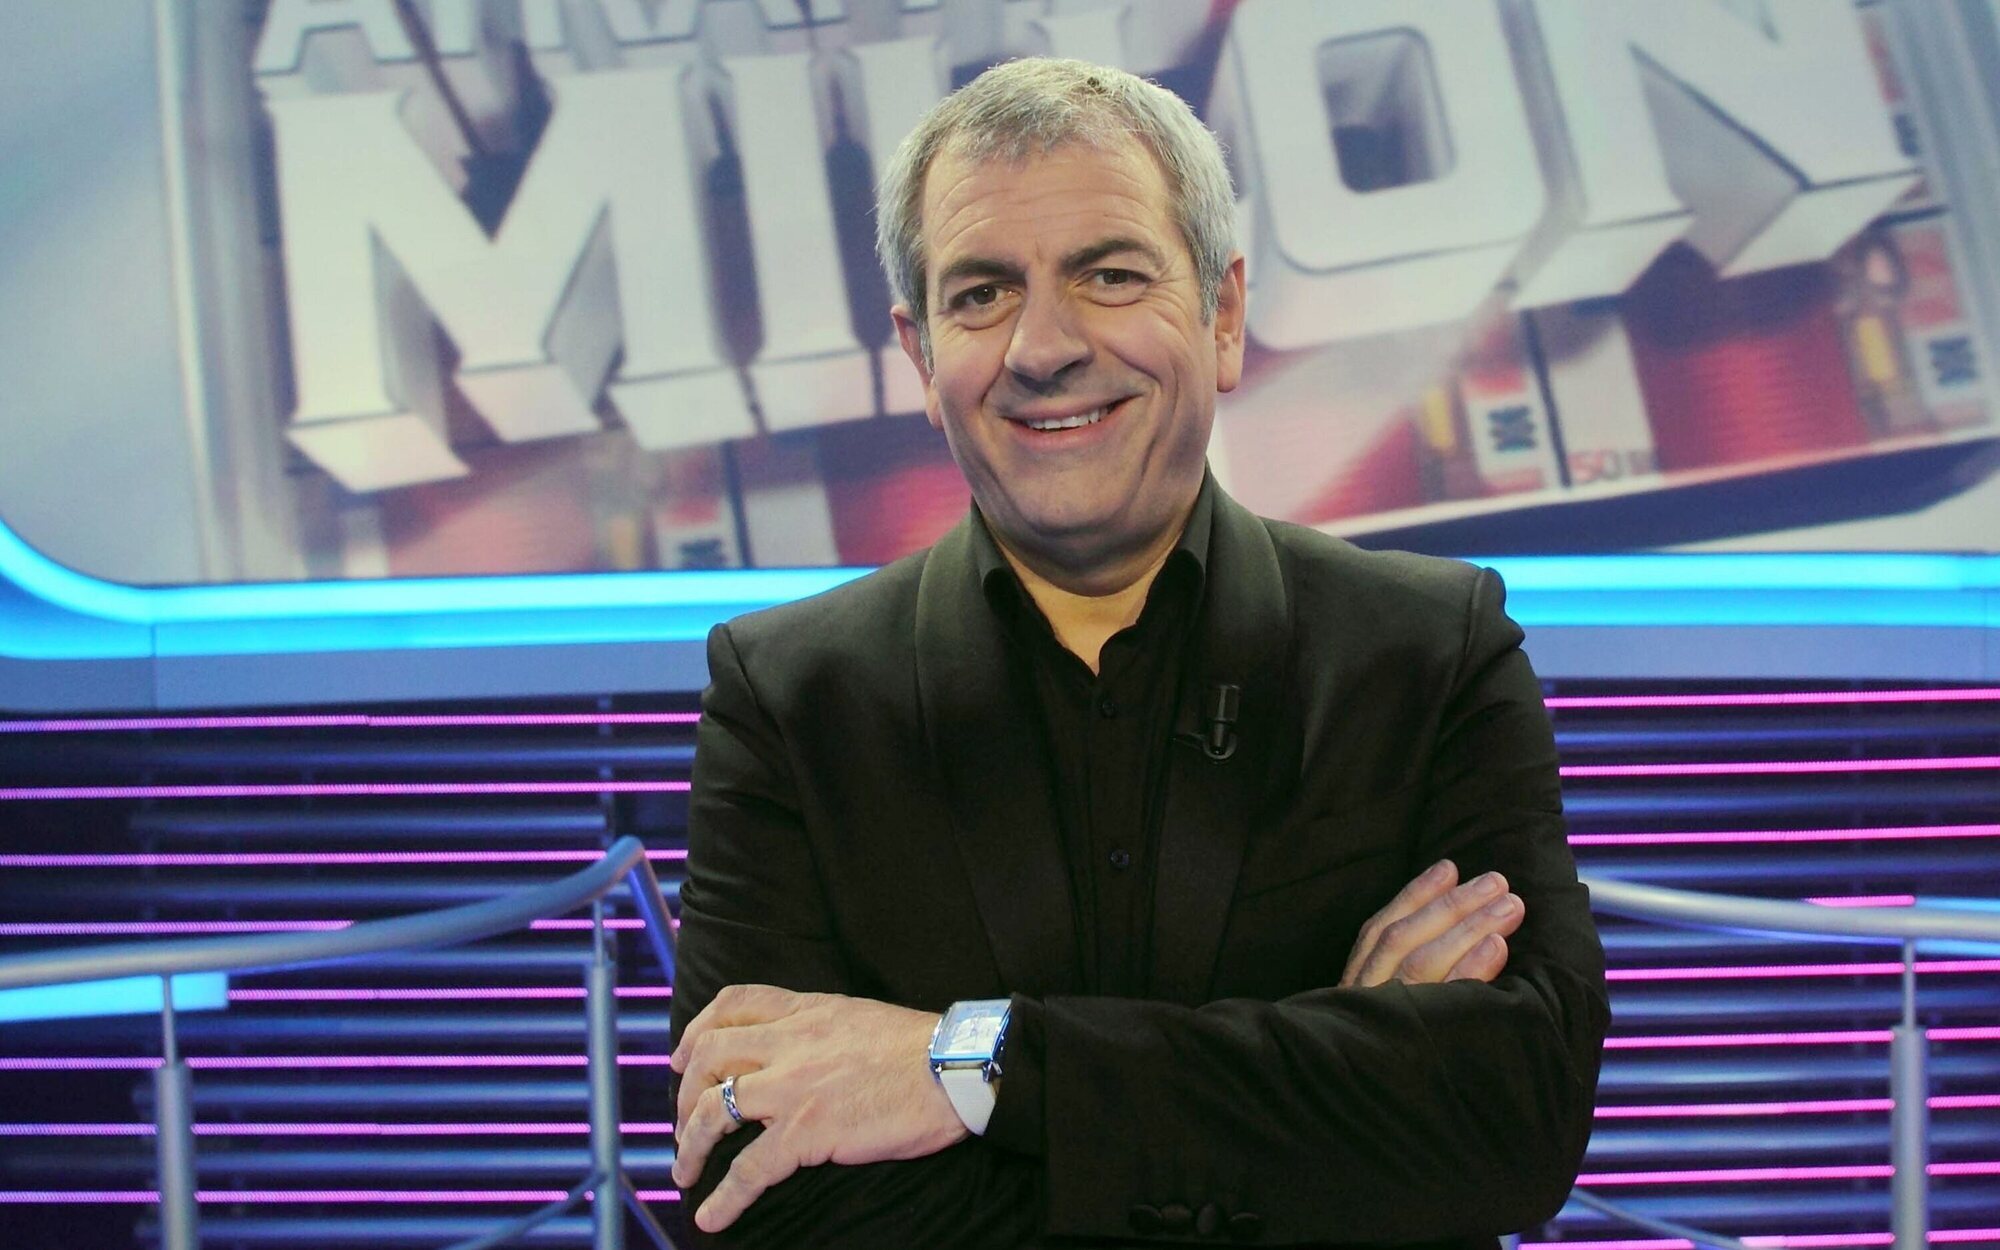 Gestmusic vuelve a producir el concurso 'Atrapa un millón' 10 años después de su primera emisión para Antena 3